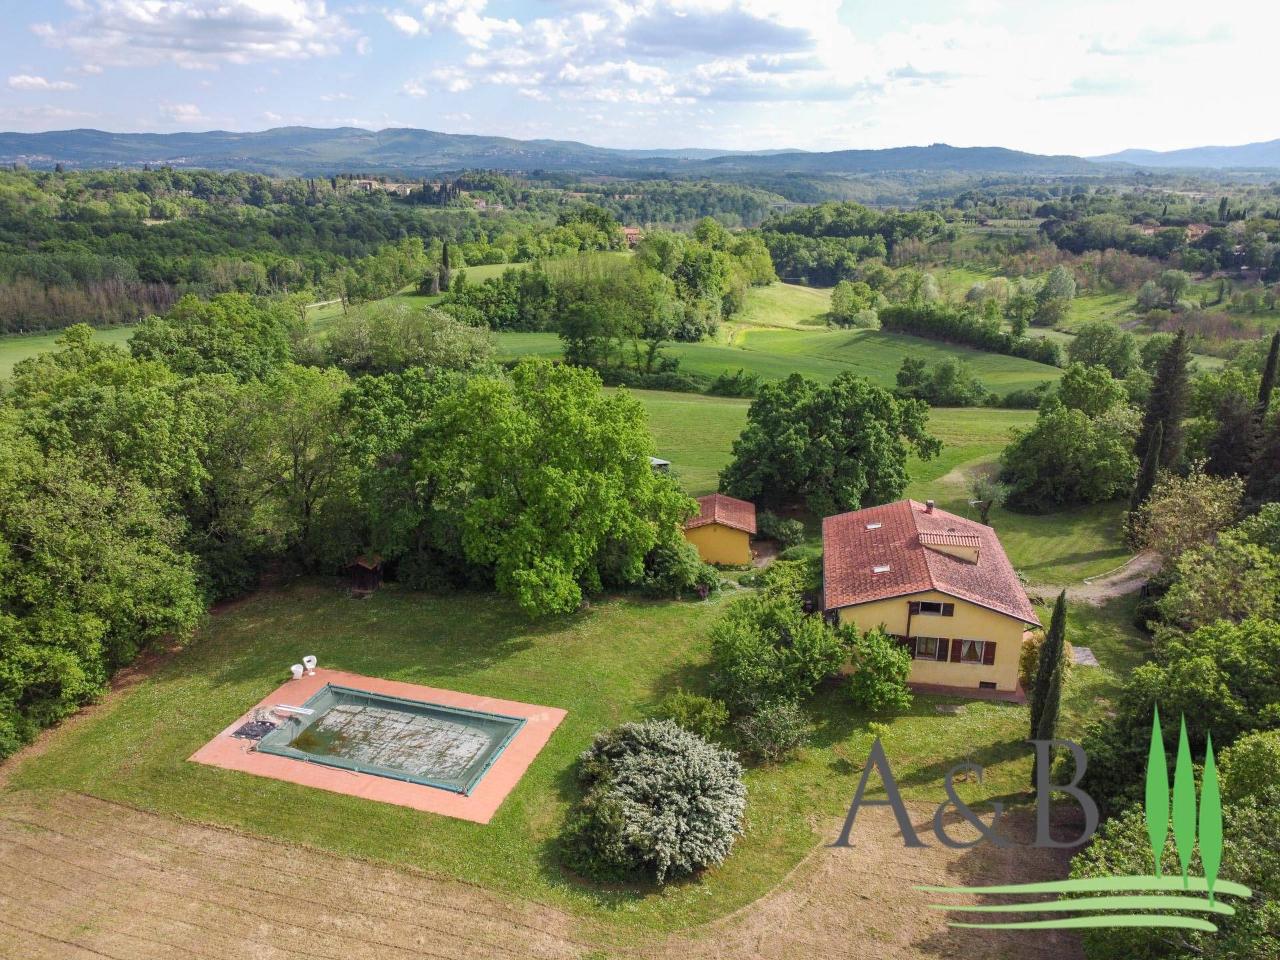 Villa in vendita a Terranuova Bracciolini